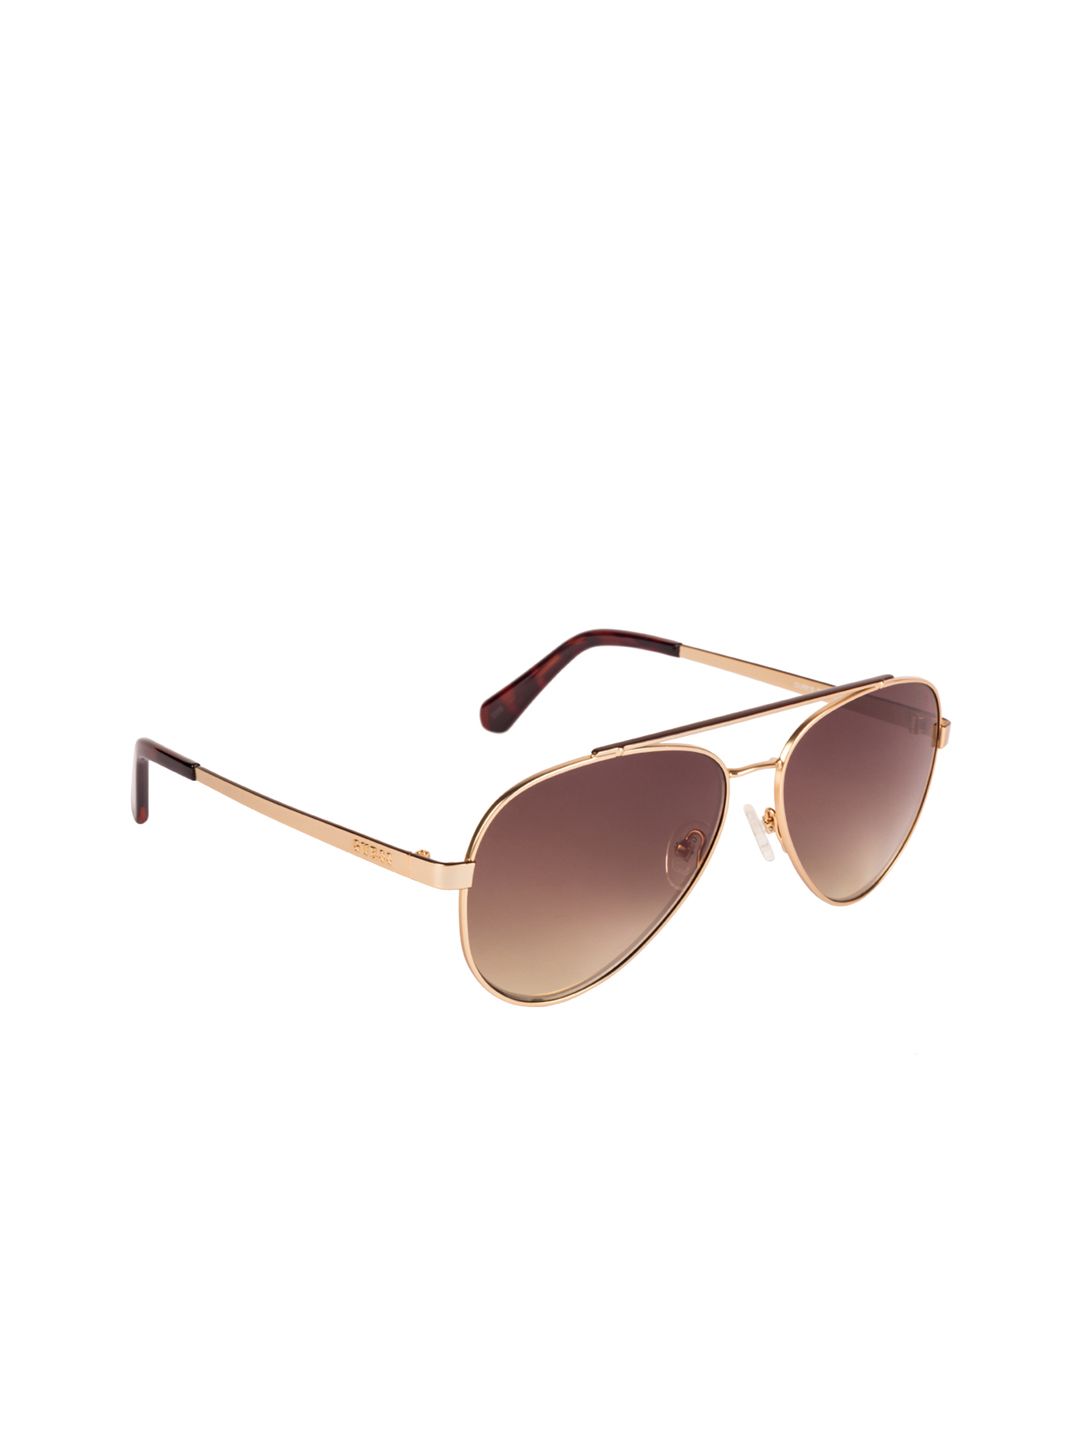 GUESS Women Aviator Sunglasses GU6918 59 32G Price in India